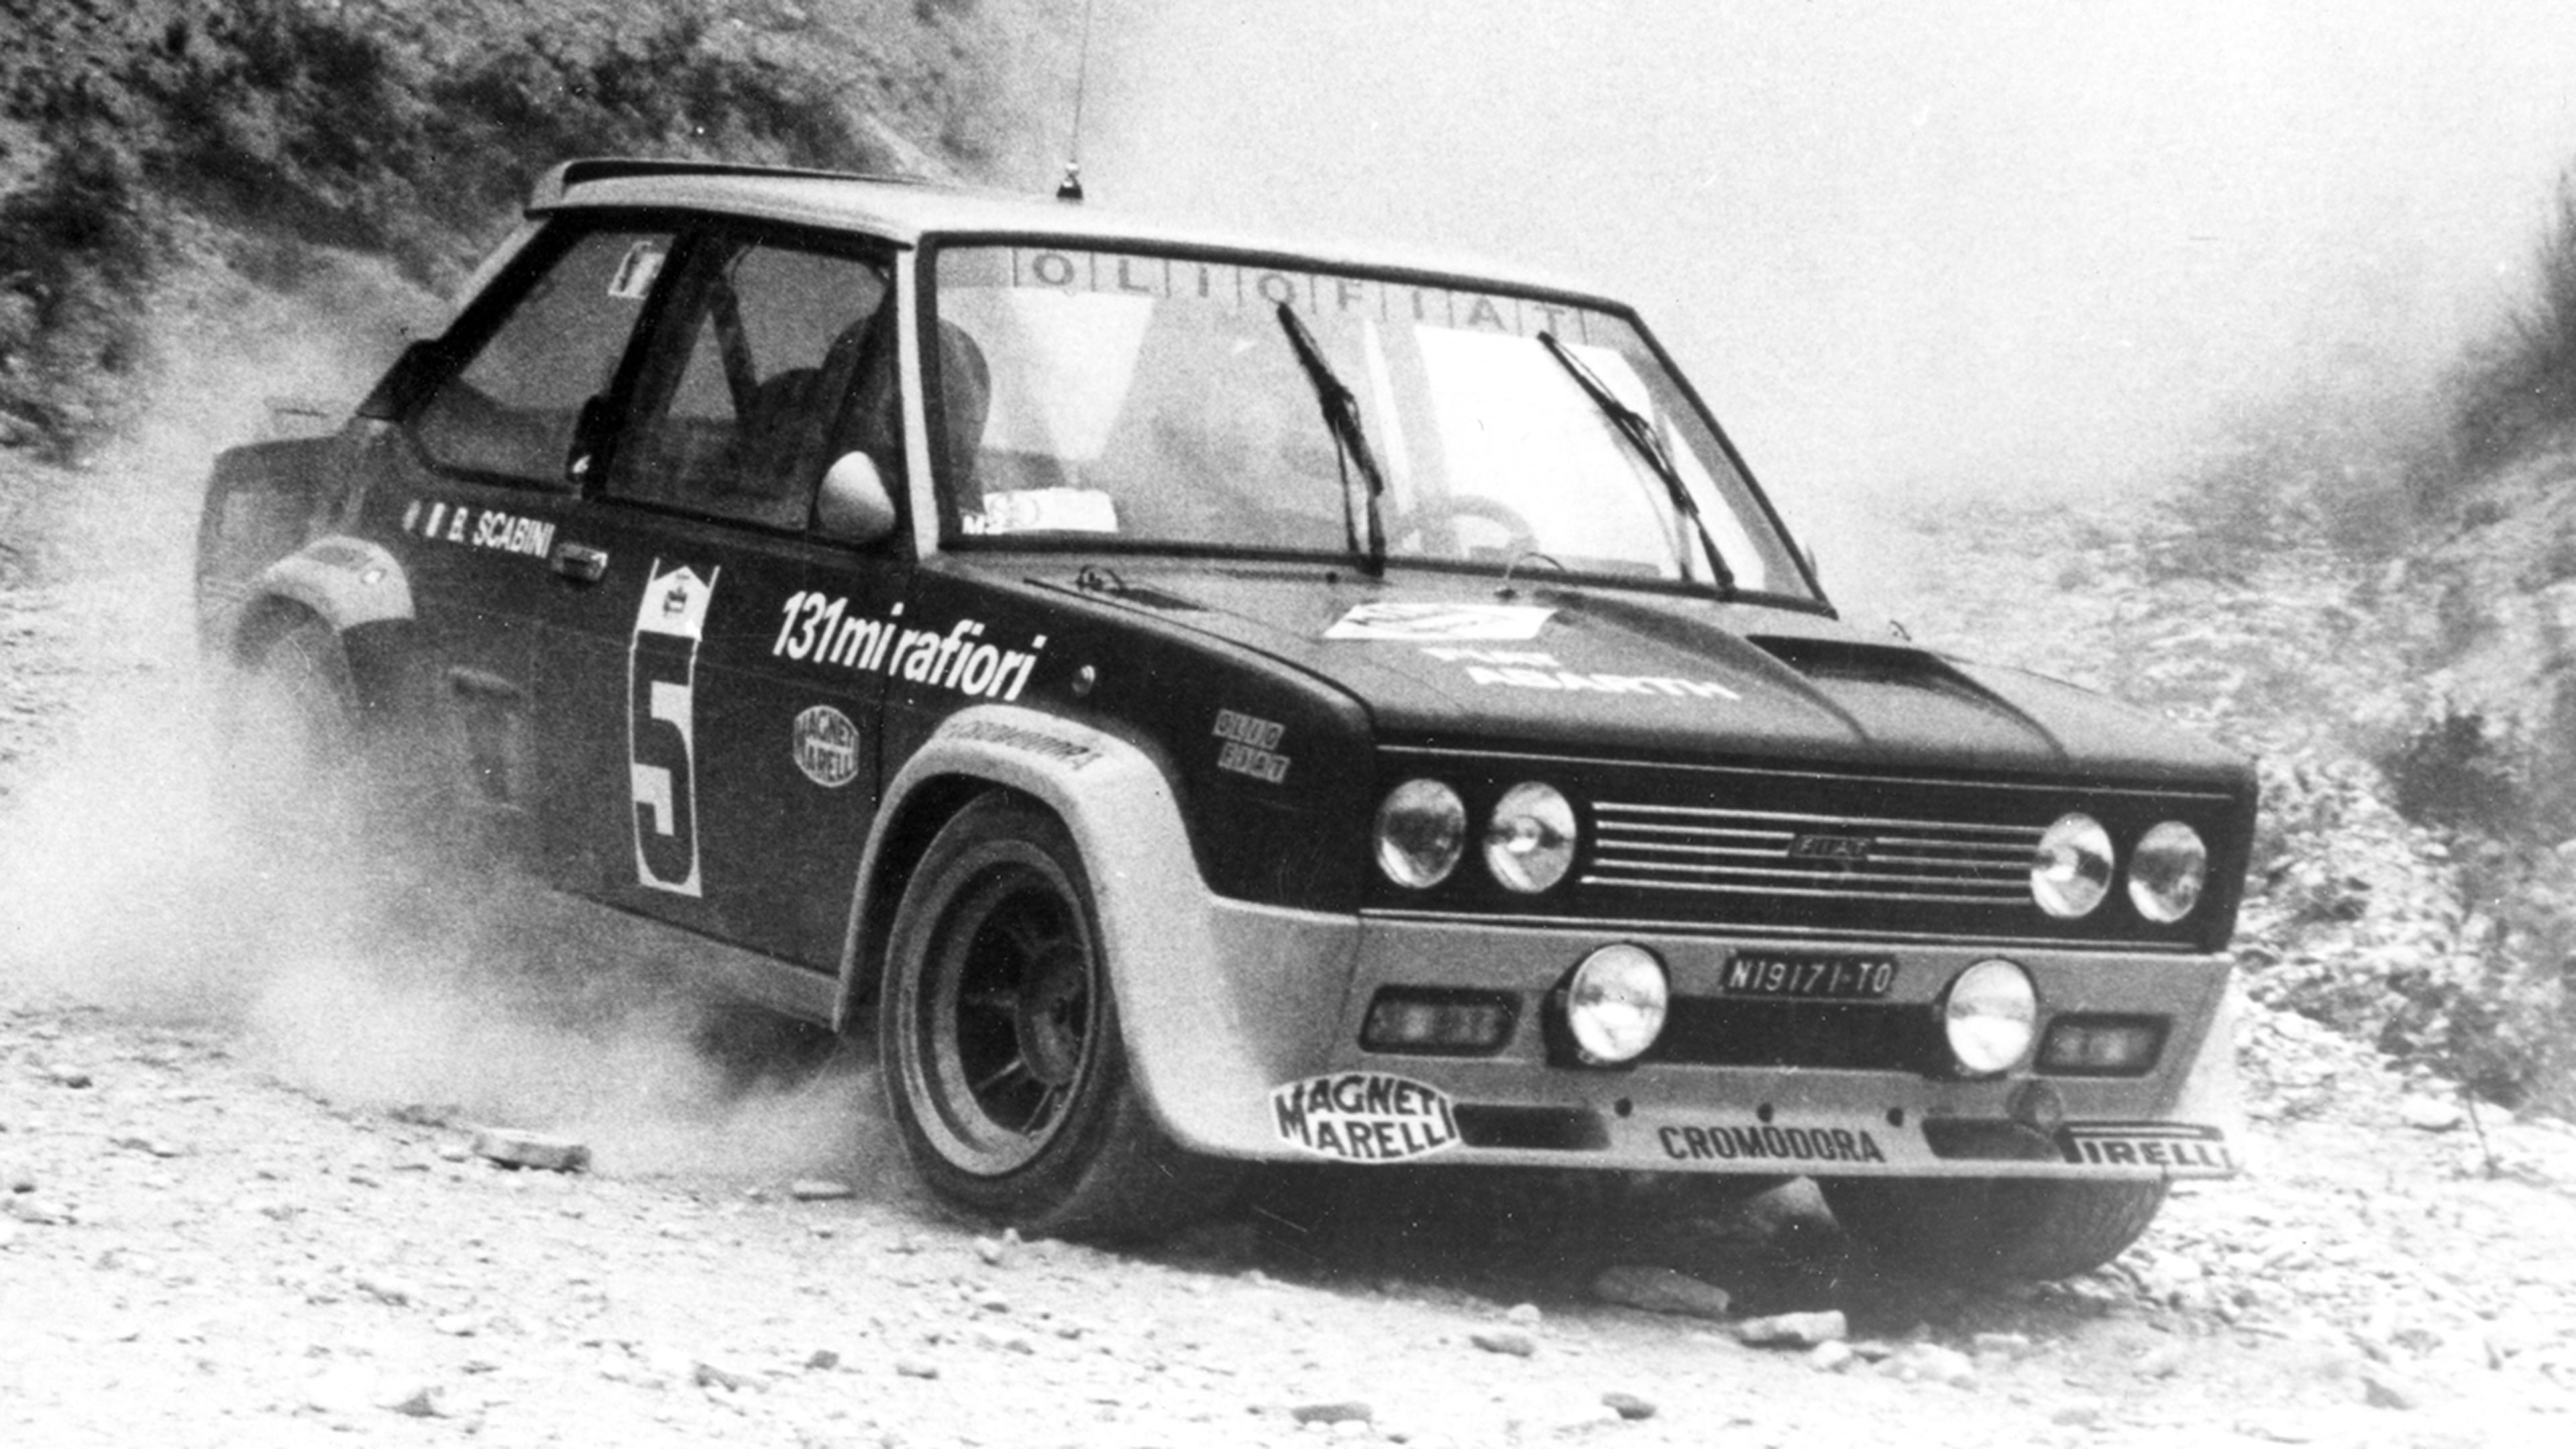 Abarth 131 en el Rally 4 Regioni de 1976. Esta unidad pilotada por Giorgio Pianta no terminó. Foto: Abarth